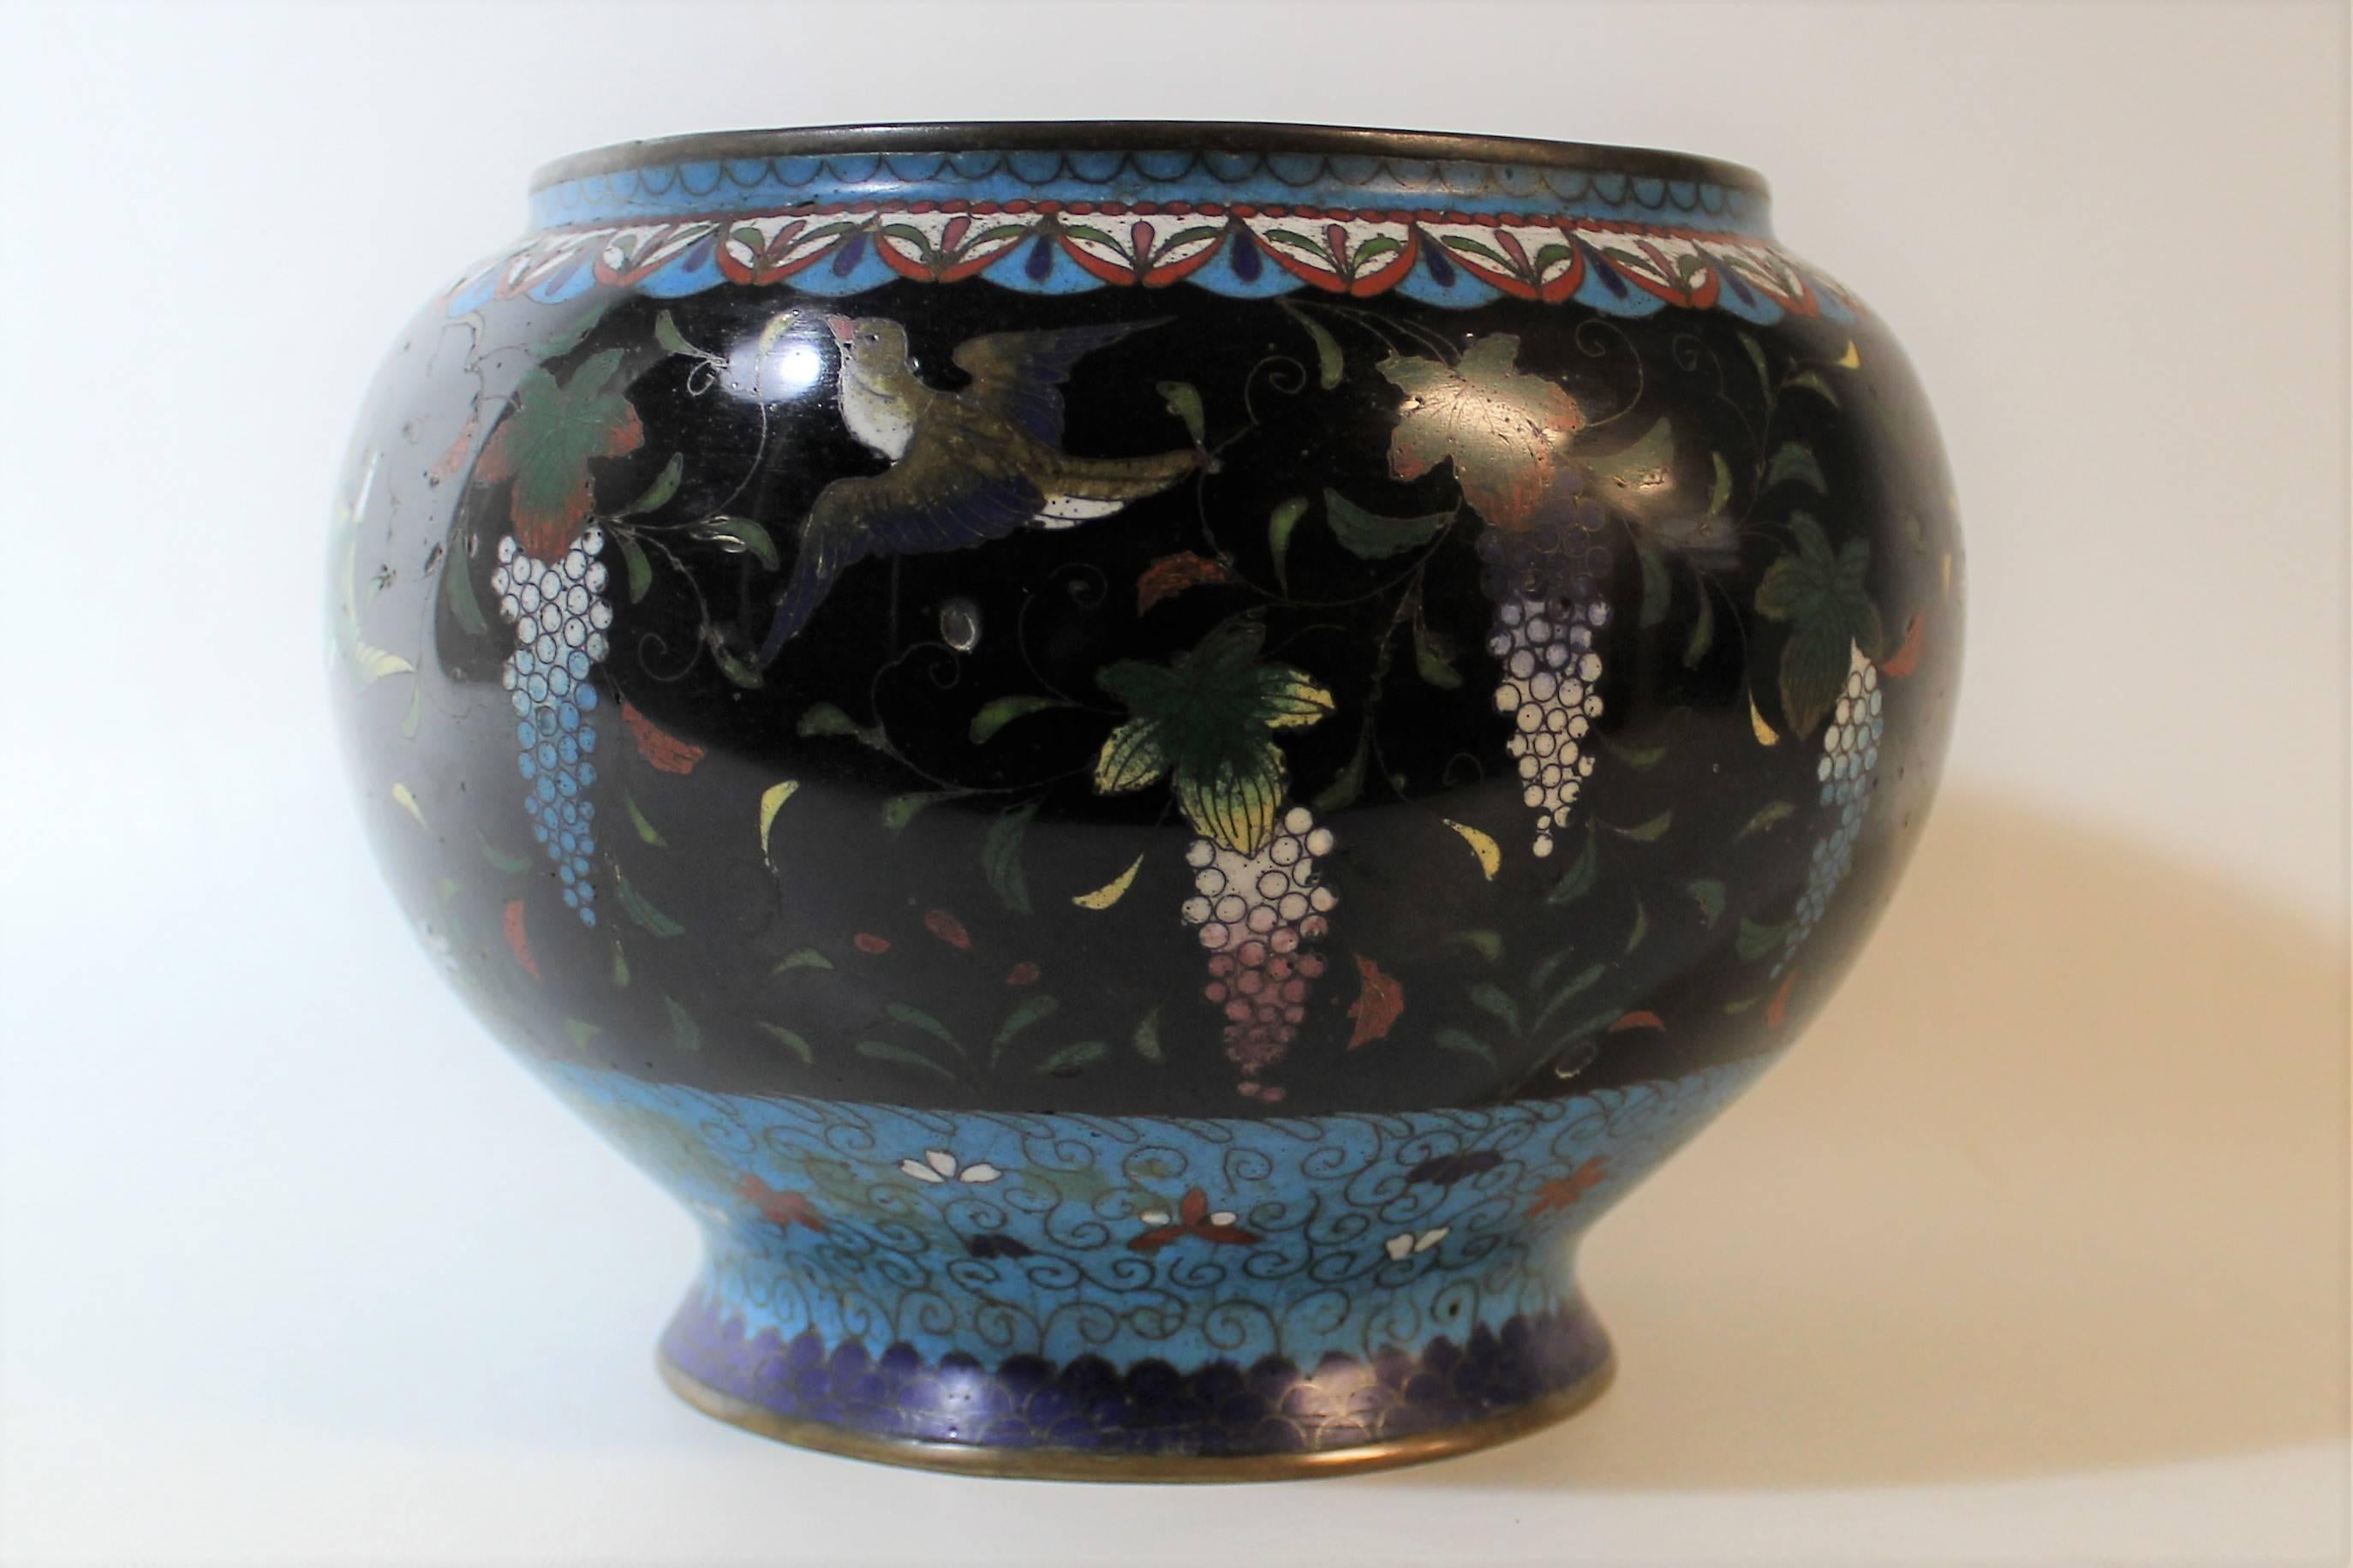 Cloissoné Japanese Meiji Period Cloisonné Planter Bowl